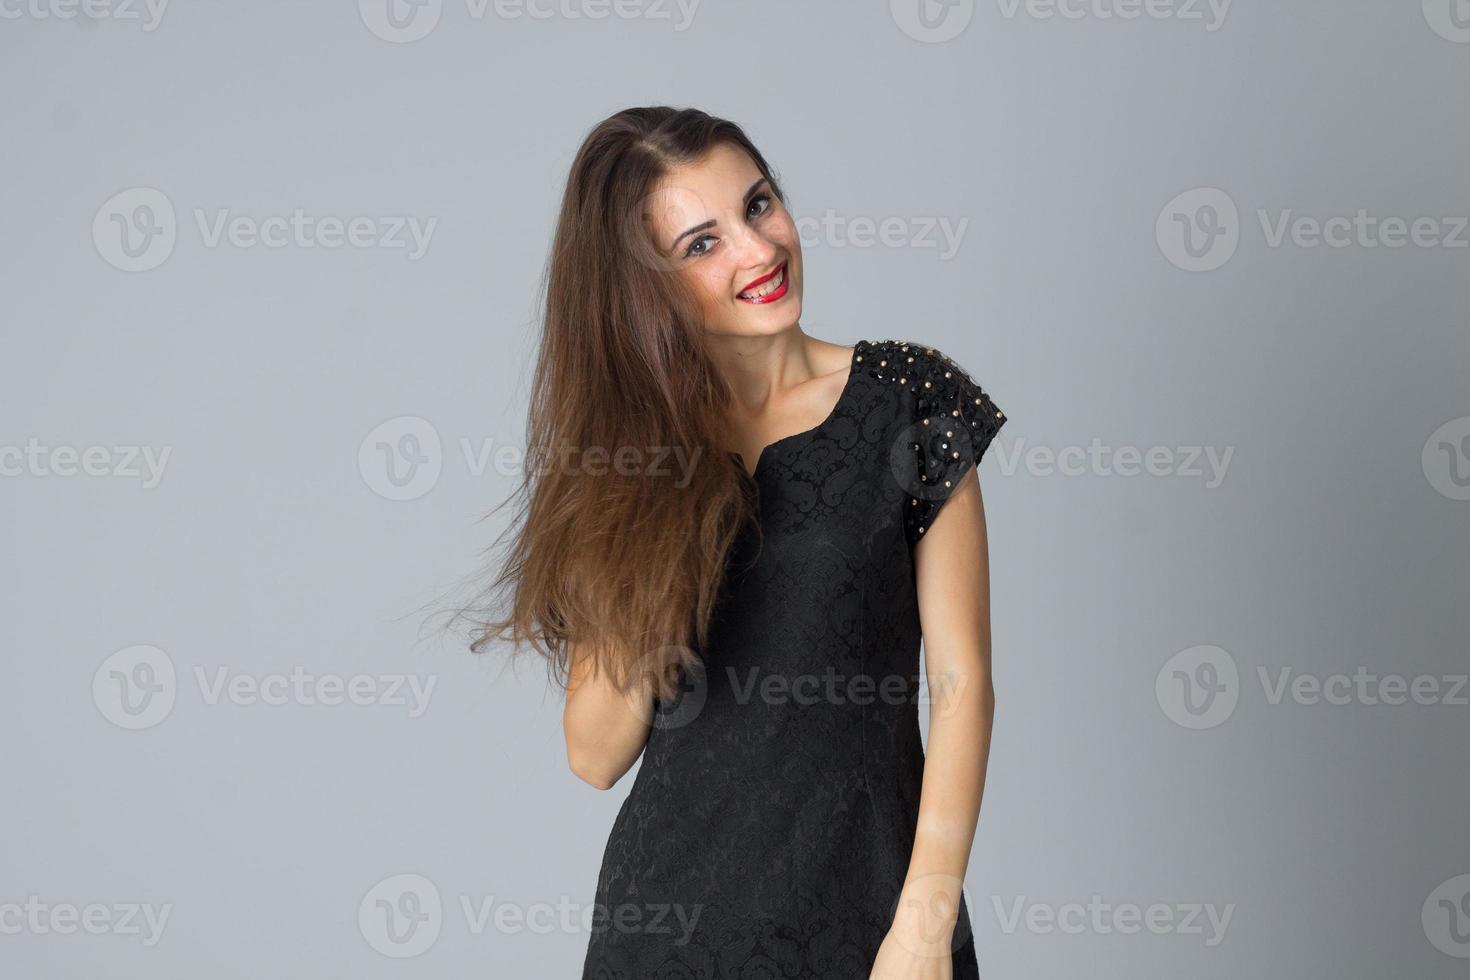 garota de vestido preto posando no estúdio foto